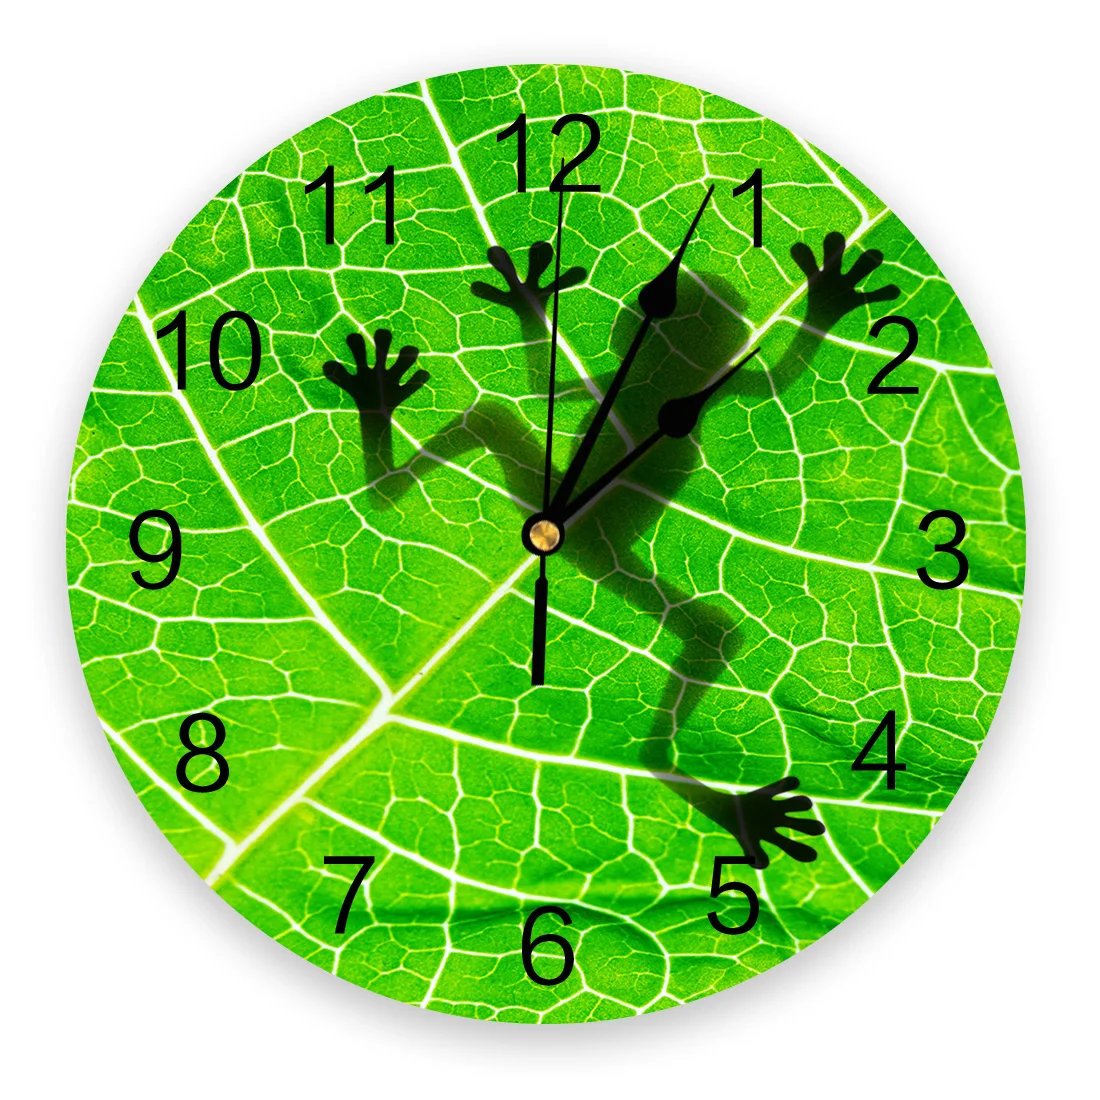 Часы настенные зеленые. Часы настенные круглые зеленые. Зеленые круглые часы. Часы настенные в виде листика. Декор настенный круглый зеленый.